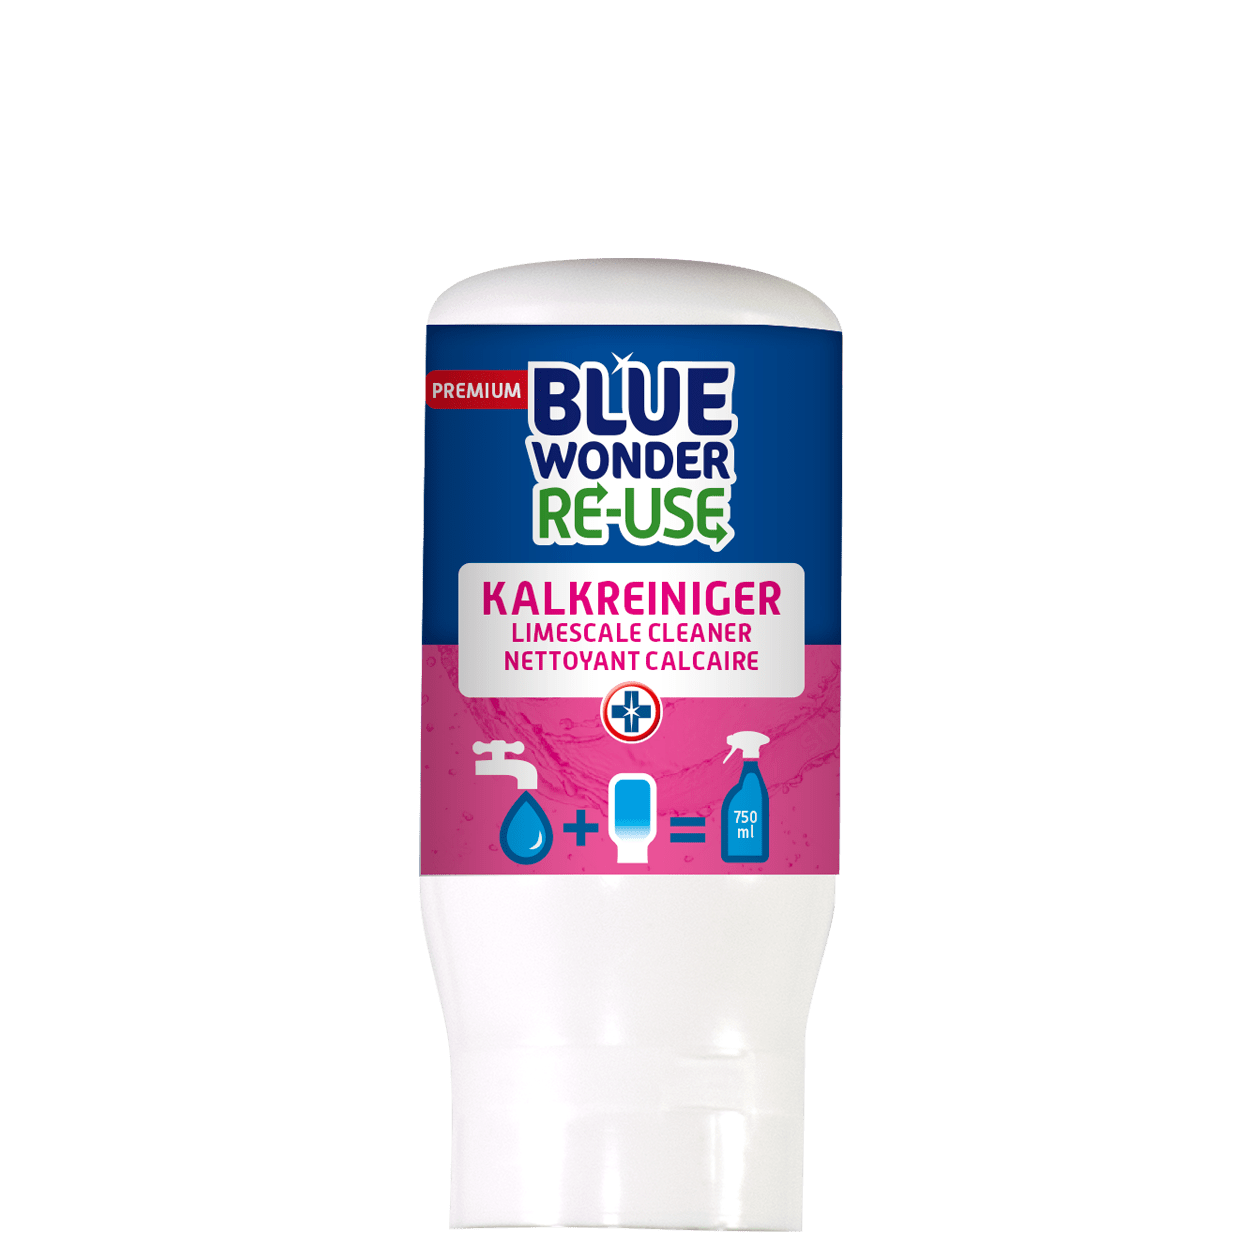 8712038002766_Blue-Wonder-RE-USE-capsule_Kalkreiniger